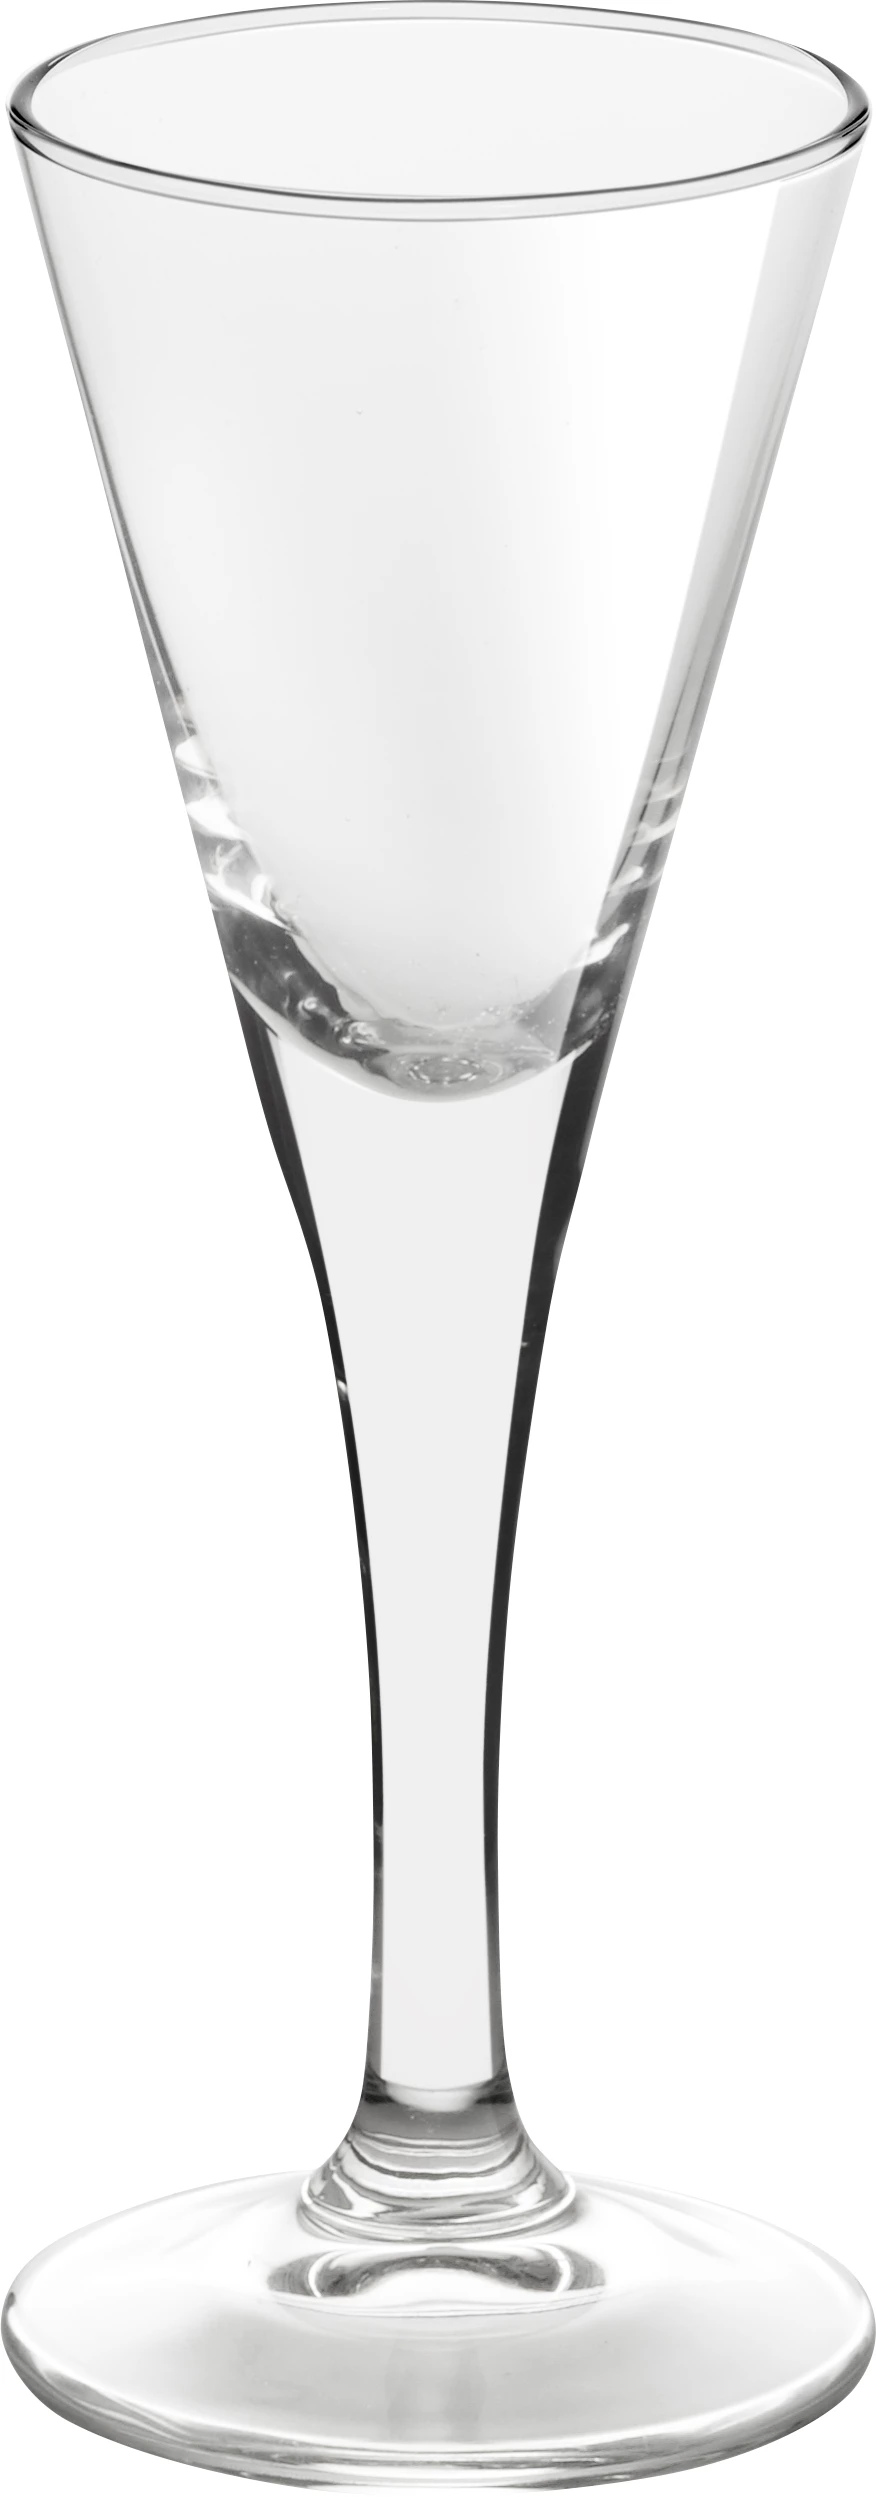 Onis Aquavit snapseglas, 5 cl, H14 cm